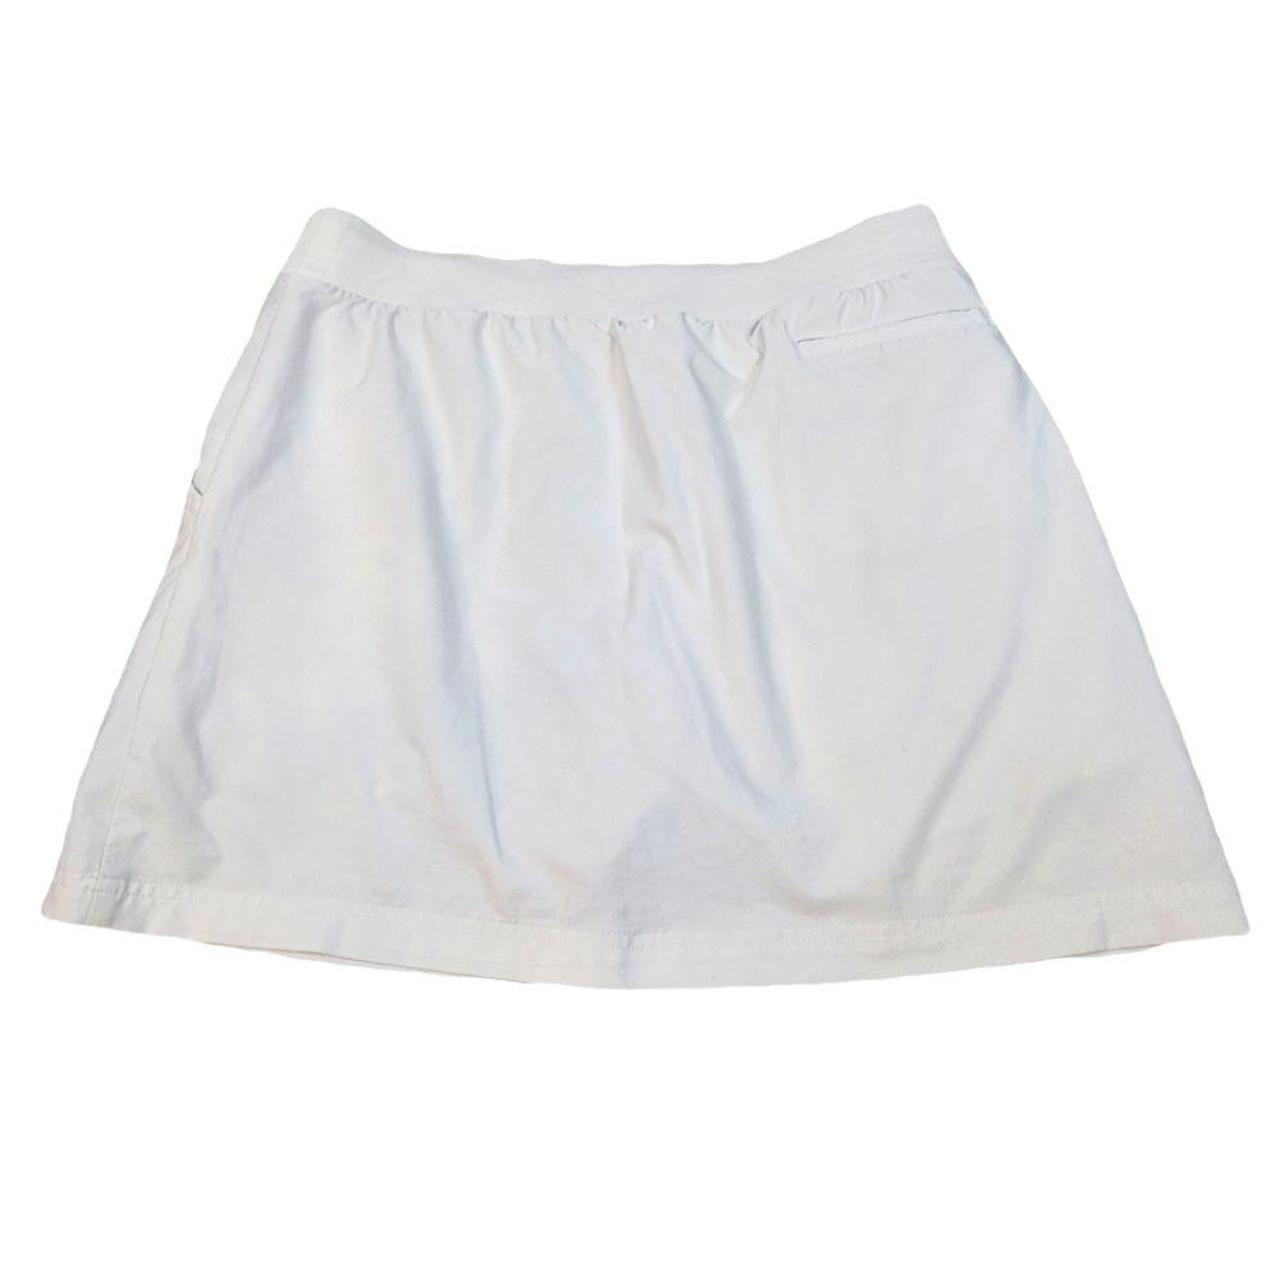 Product Image 2 - Slazenger White Tennis Skirt/Skort

Size Medium